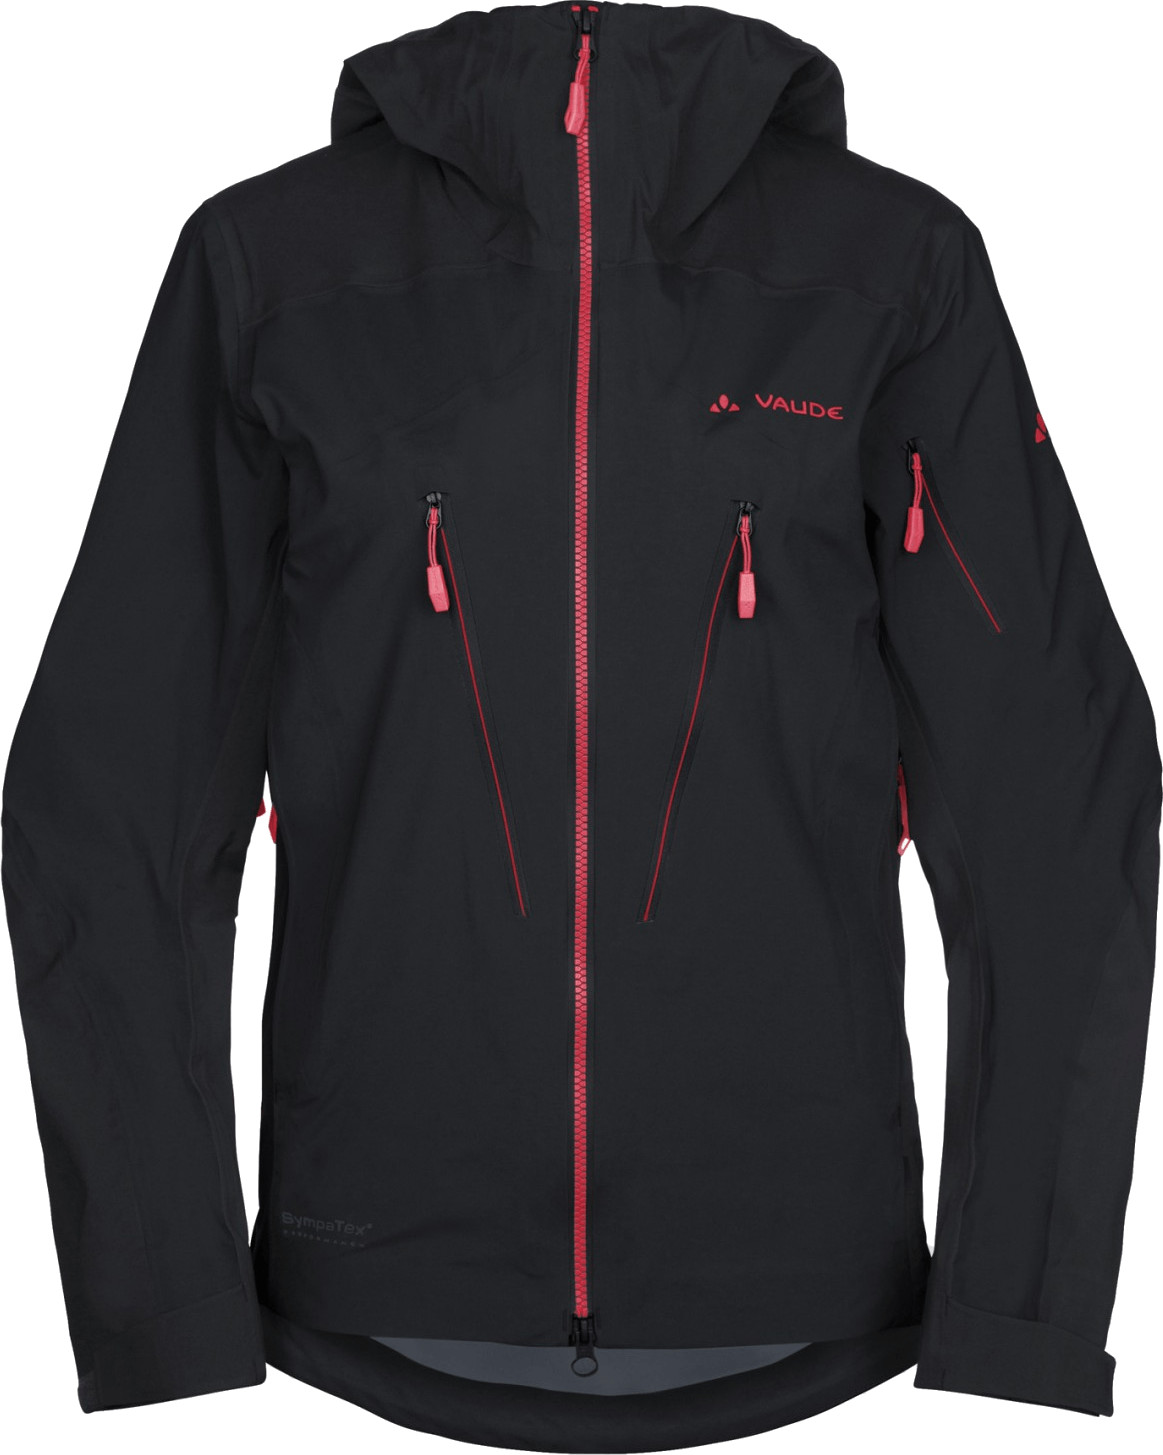 VAUDE Women's Aletsch Jacket III black